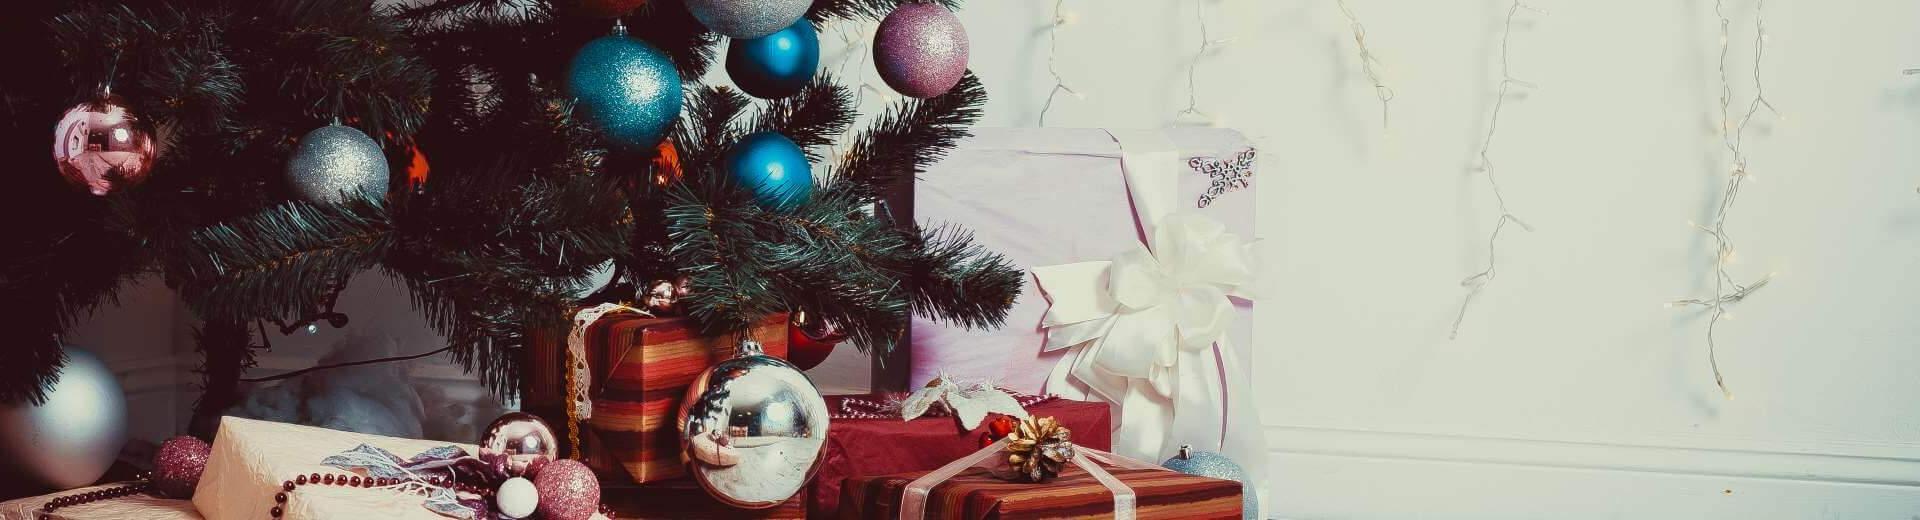 Weihnachten im Ferienhaus in Kroatien | Casamundo - Casamundo